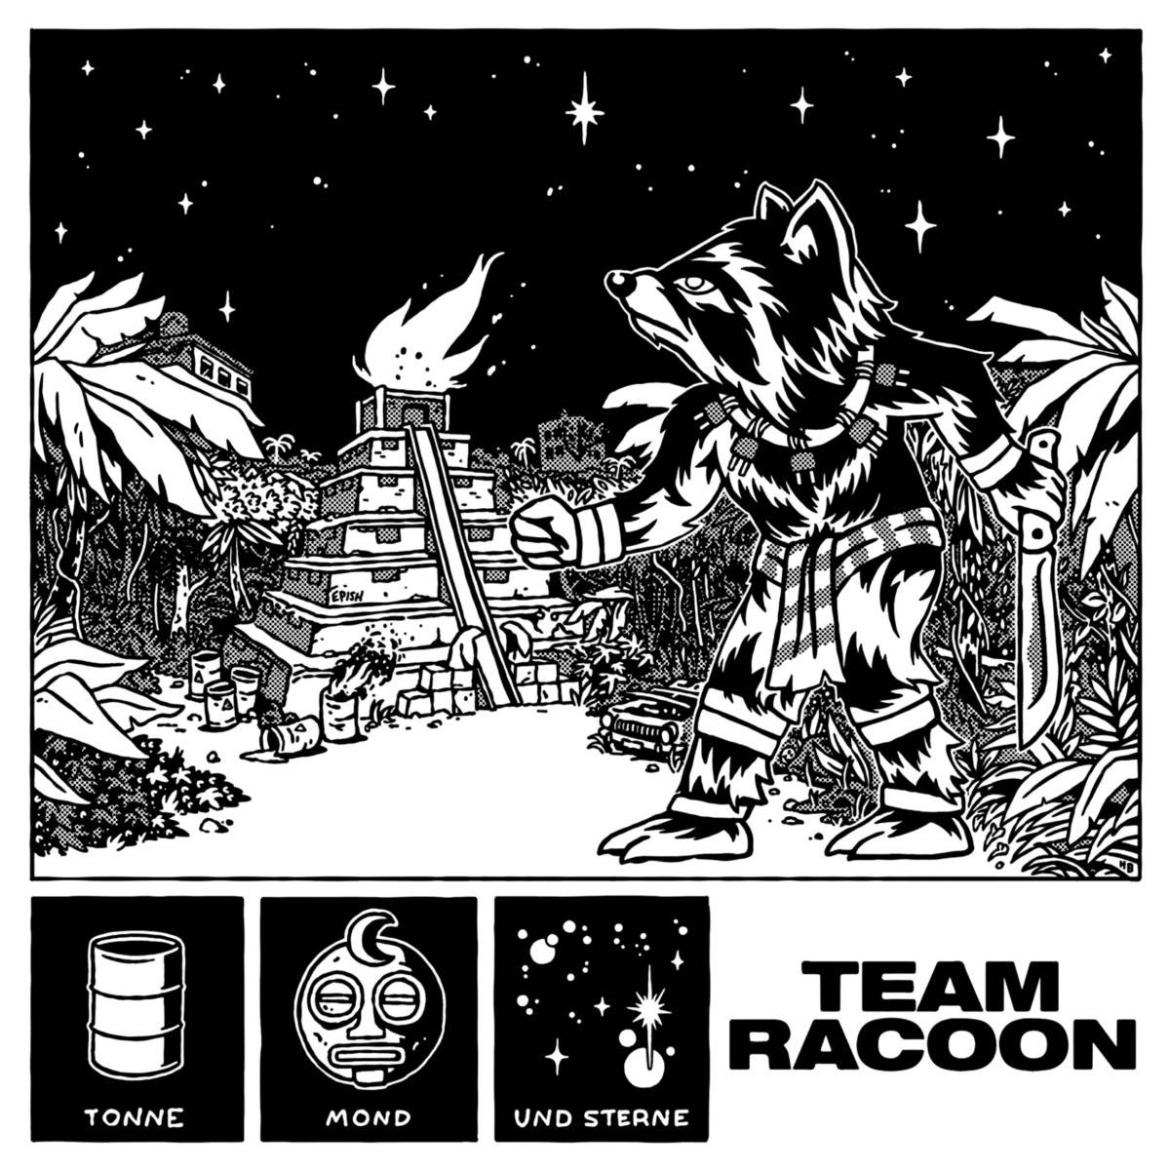 Team Racoon - Tonne, Mond und Sterne